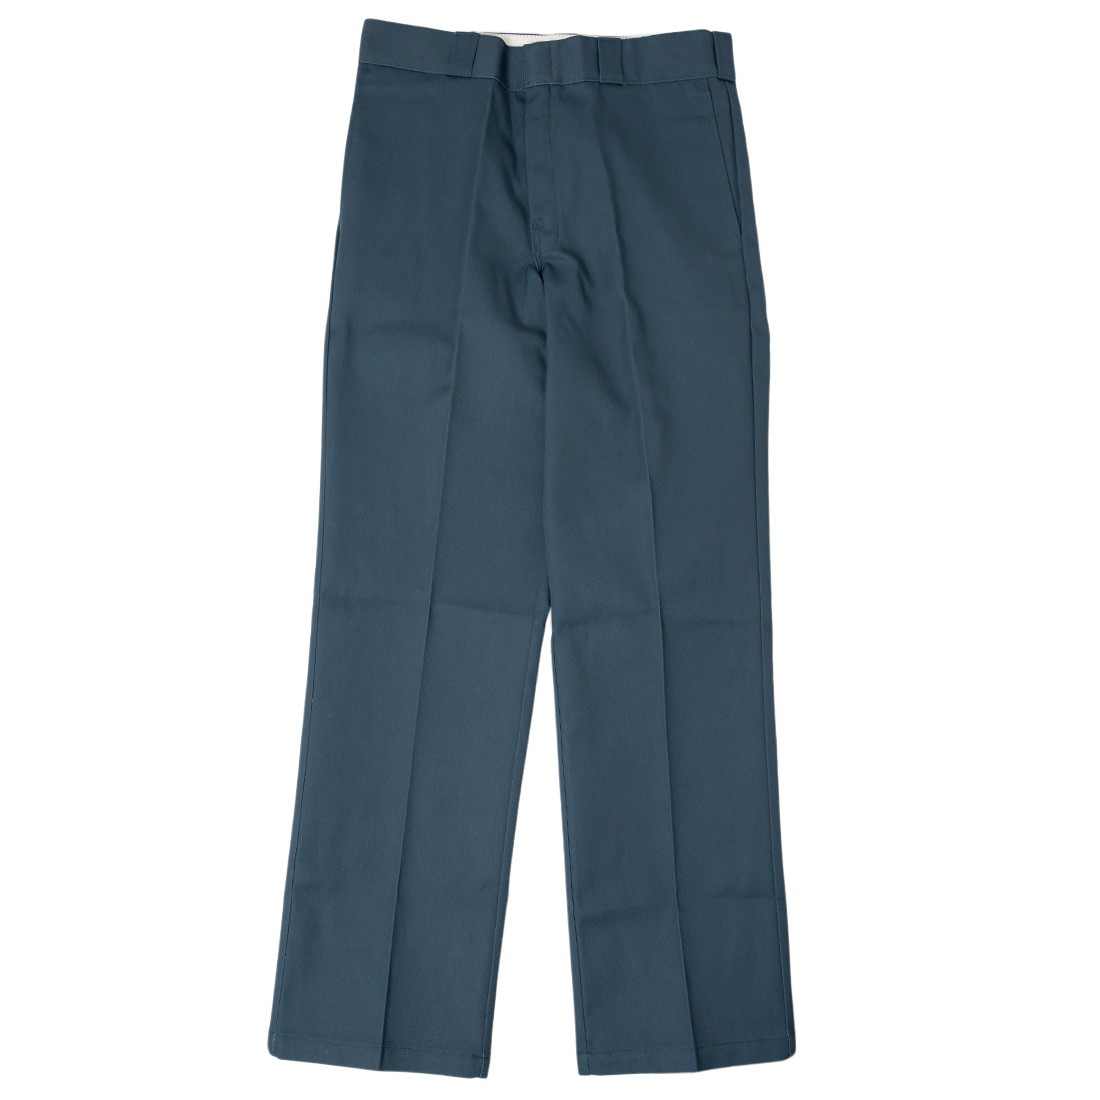 絶妙なデザイン GRIFFIN work blue pants ワークパンツ/カーゴパンツ 